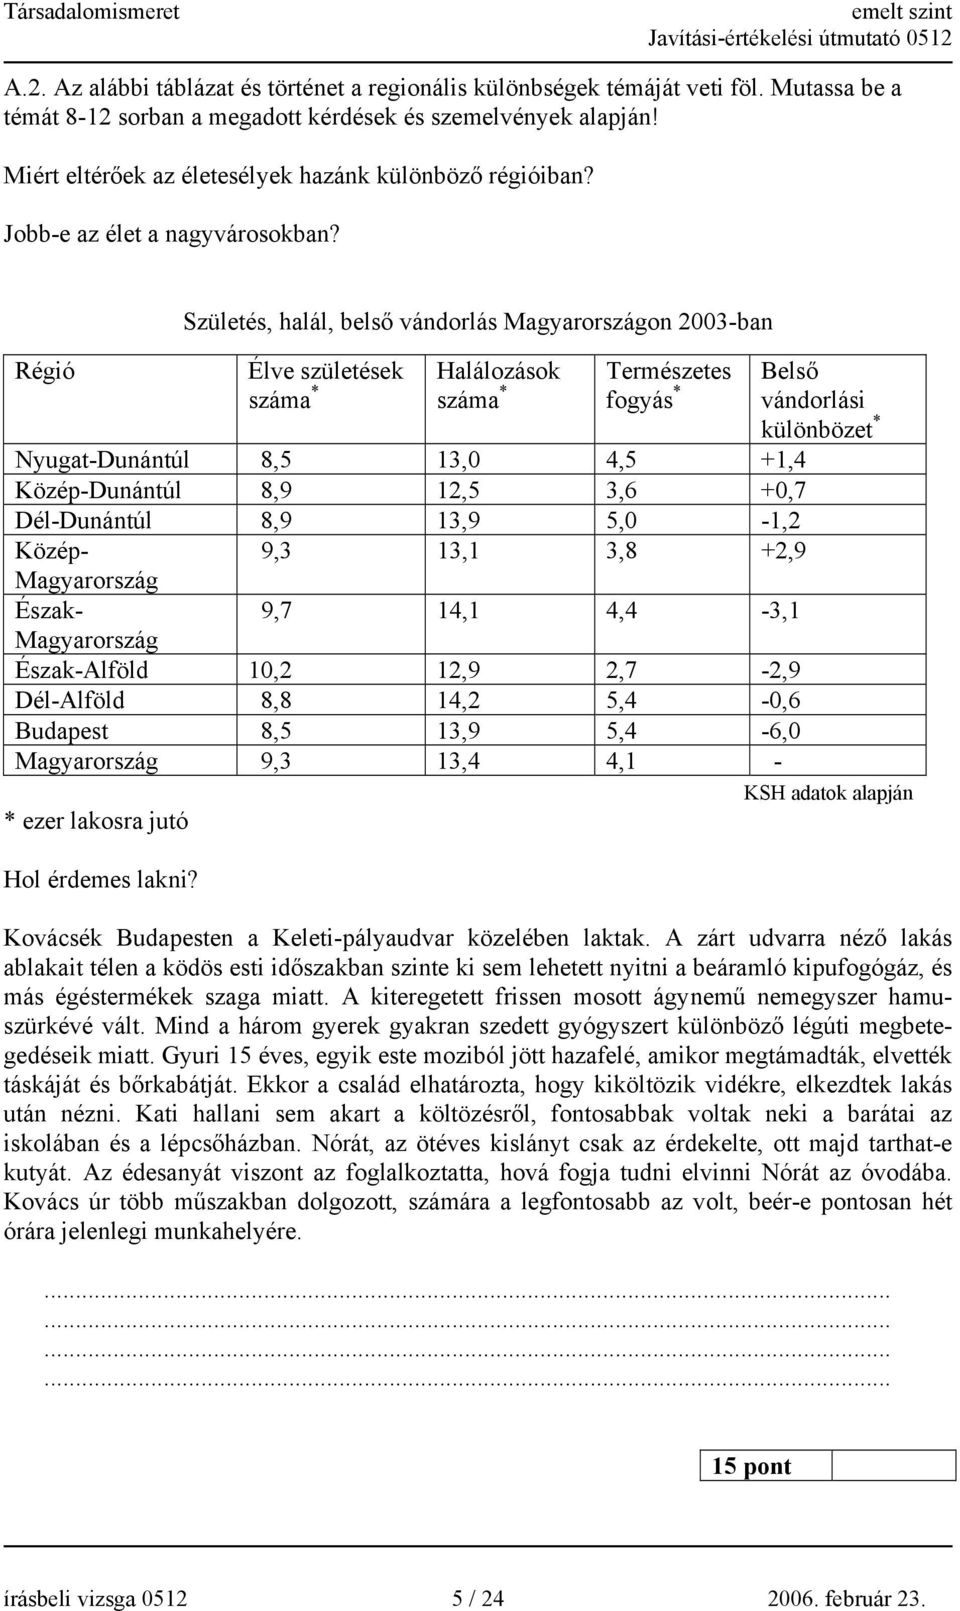 Születés, halál, belső vándorlás Magyarországon 2003-ban Élve születések száma * Halálozások száma * Természetes fogyás * Belső vándorlási különbözet * Nyugat-Dunántúl 8,5 13,0 4,5 +1,4